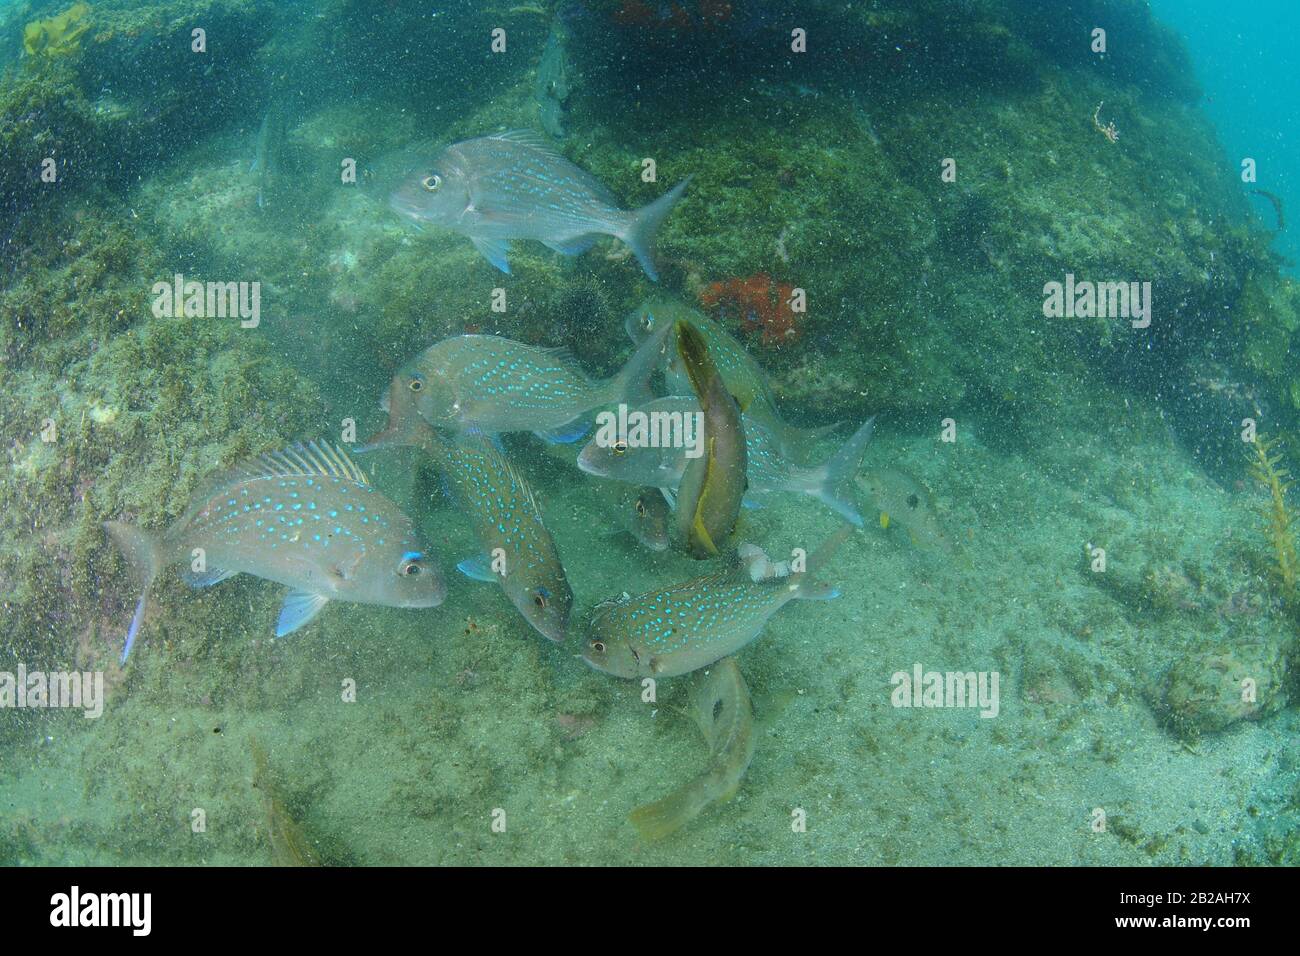 Nahkampf von Schnapper- und Wrassenfischen über felsigem Grund in trügerem Wasser mit vielen Partikeln. Stockfoto